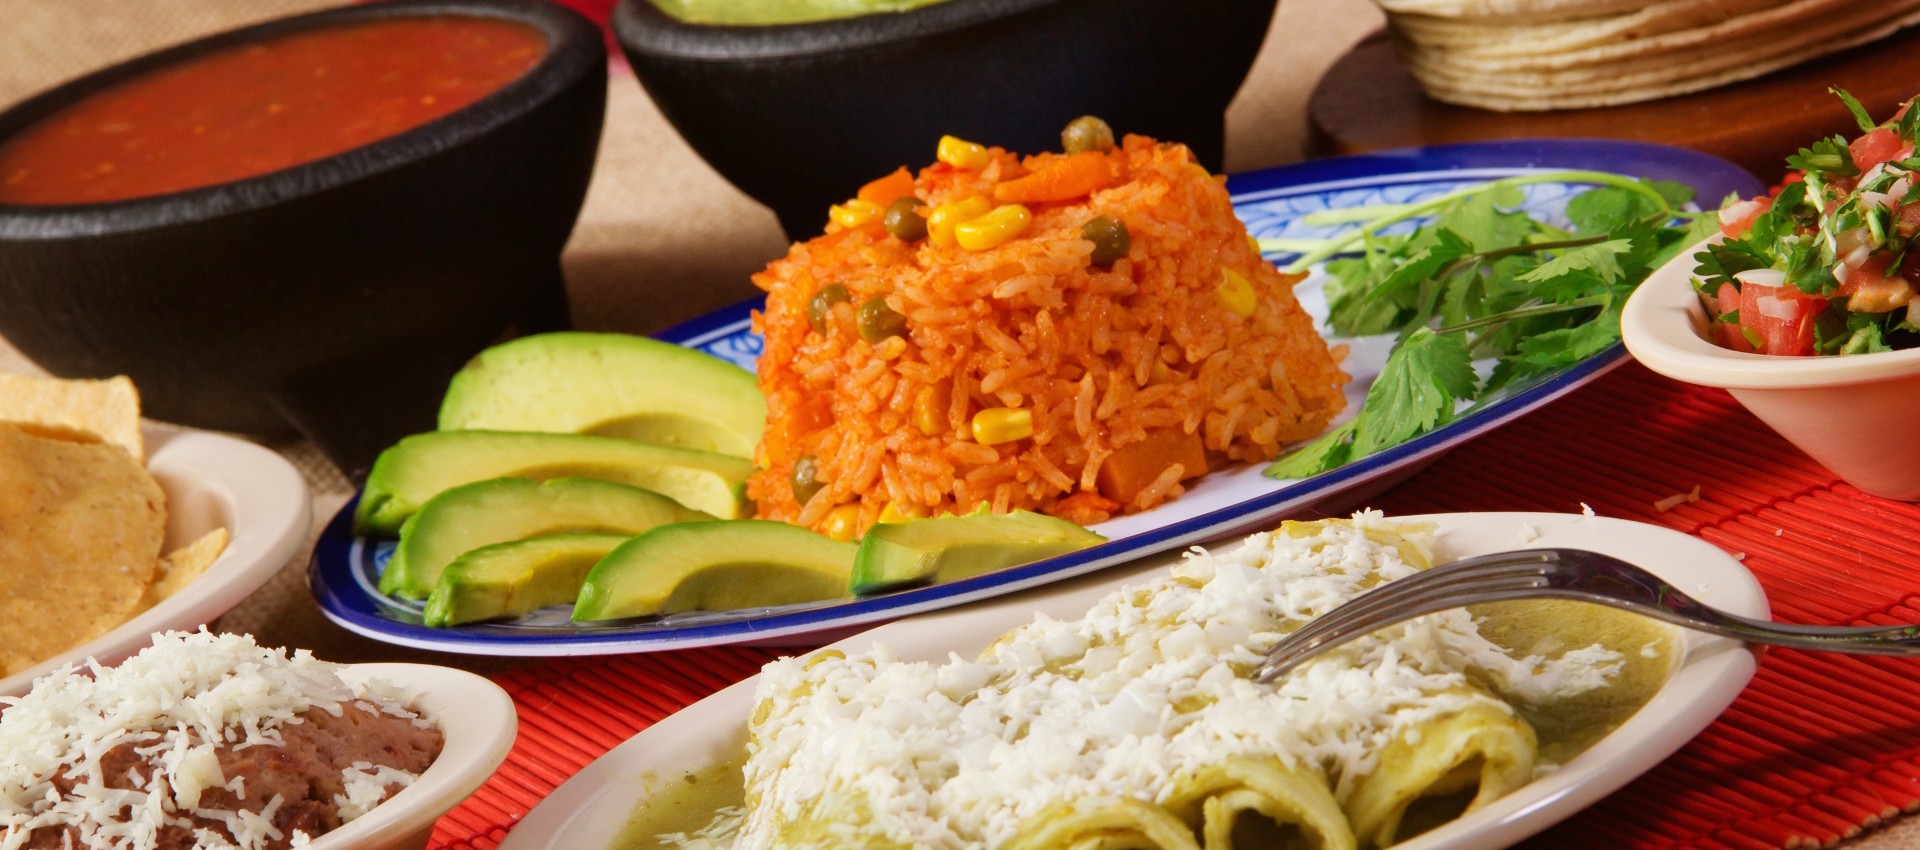 Imagen de Recetario de Comida Mexicana Gratis